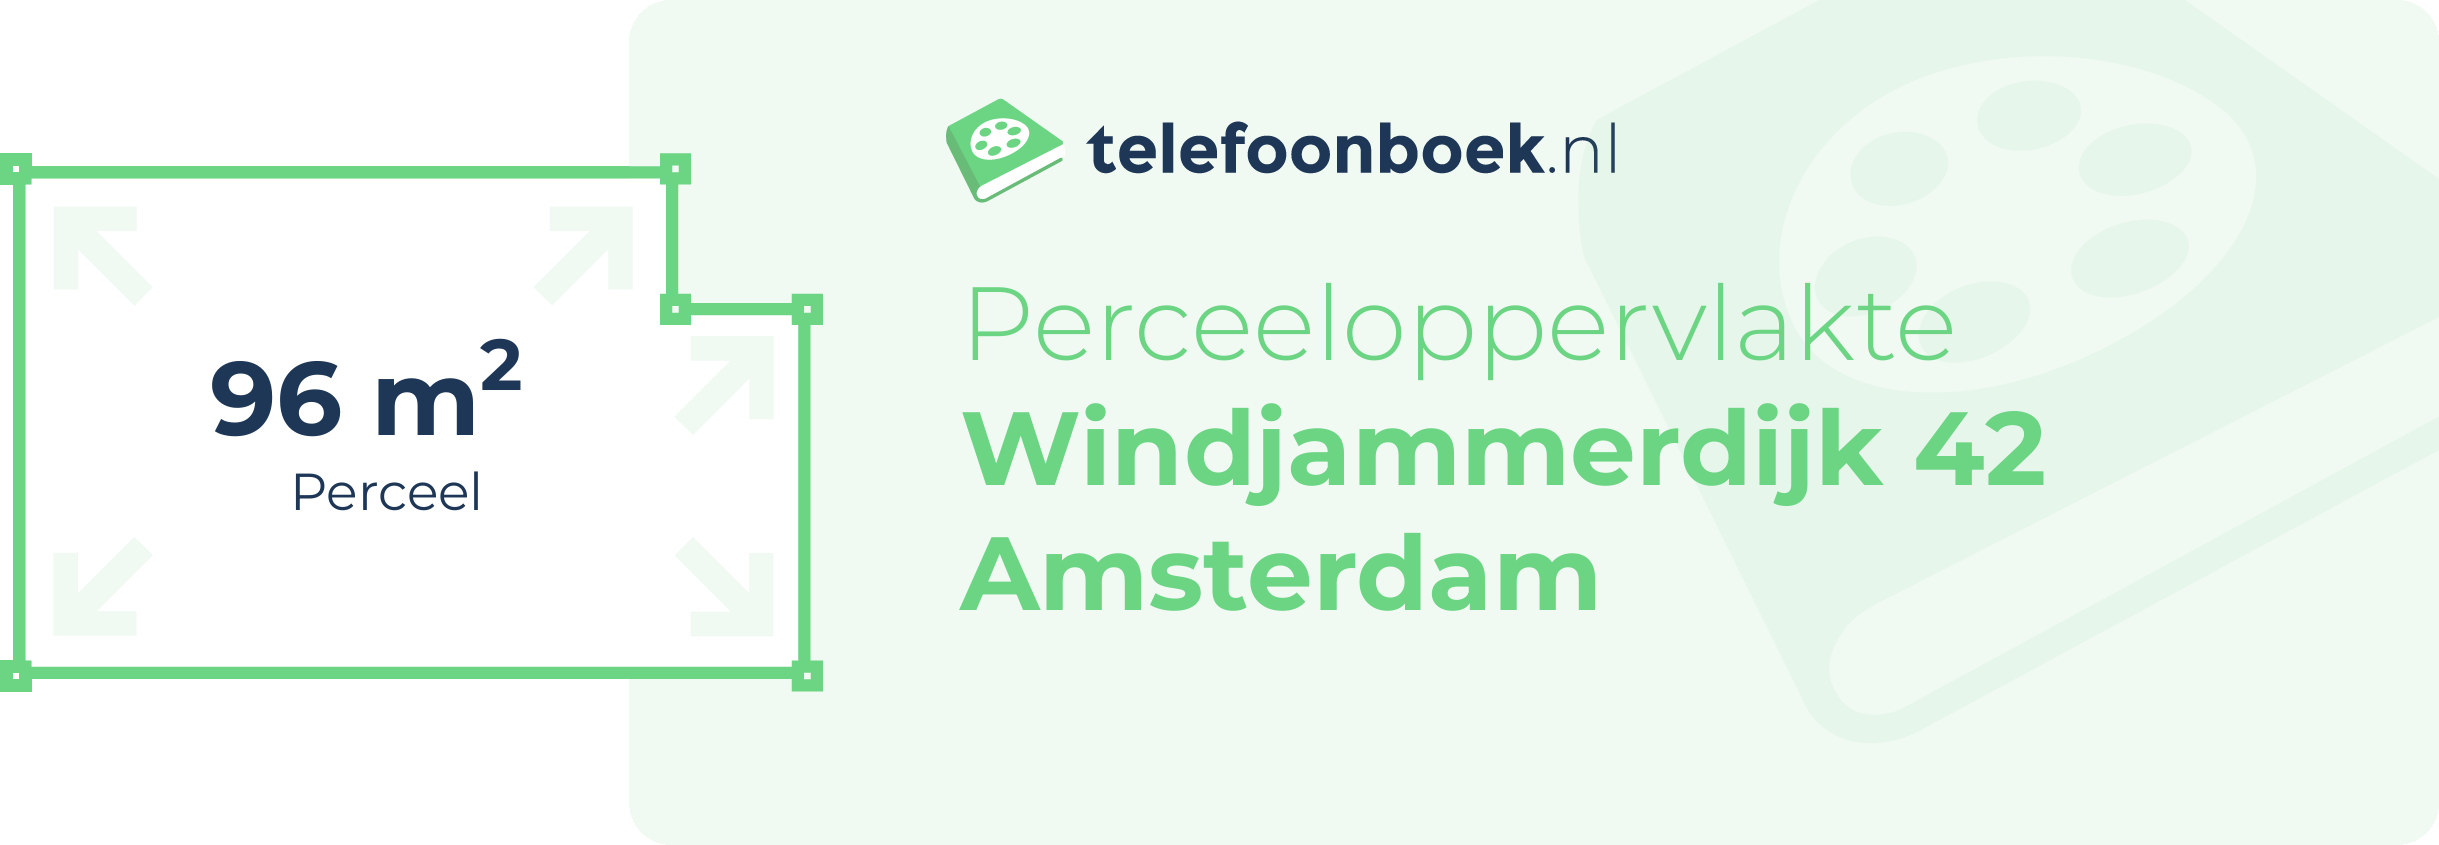 Perceeloppervlakte Windjammerdijk 42 Amsterdam